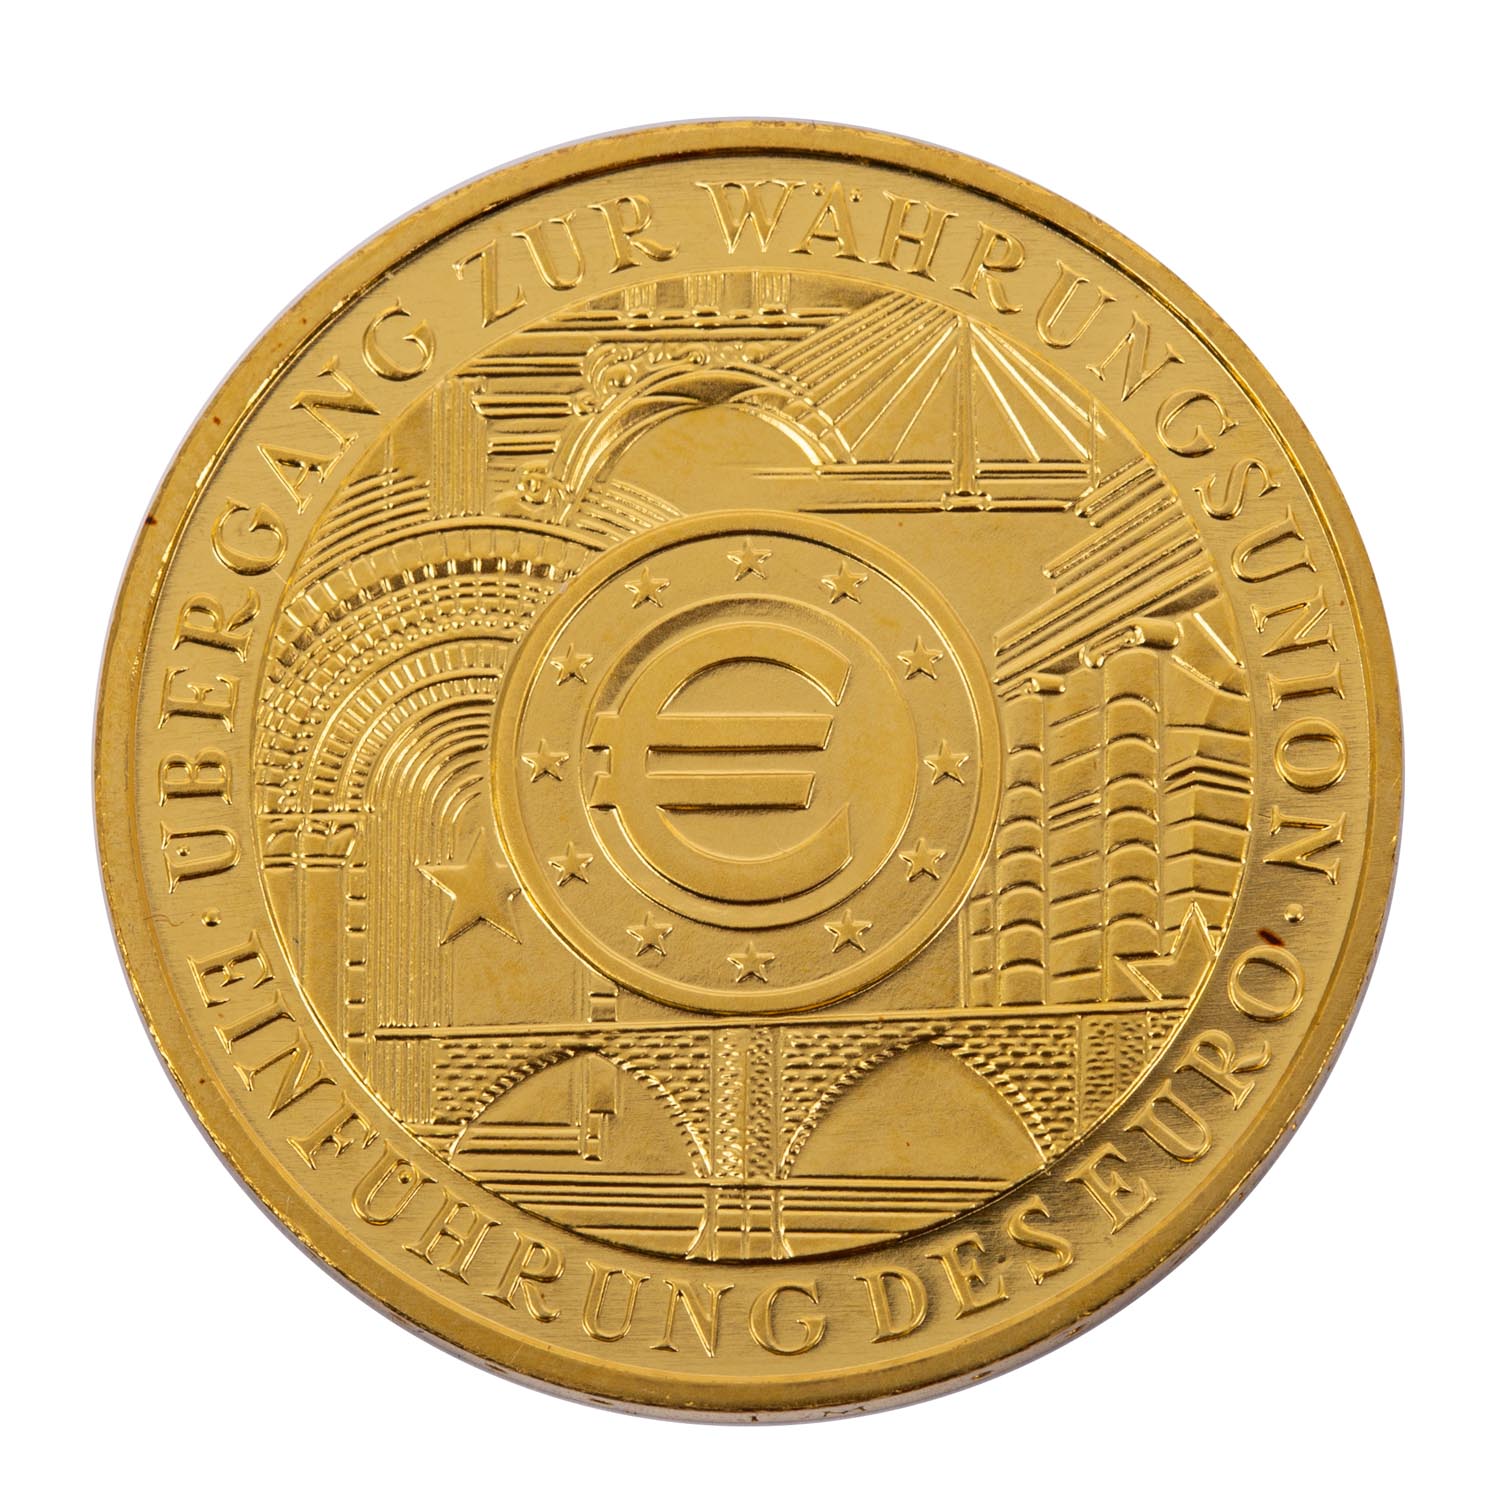 BRD - 200 Euro 2002 D in Gold, 1 Unze fein, prägefrisch, verkapselt FRG - 200 euros 2002 D in gold,